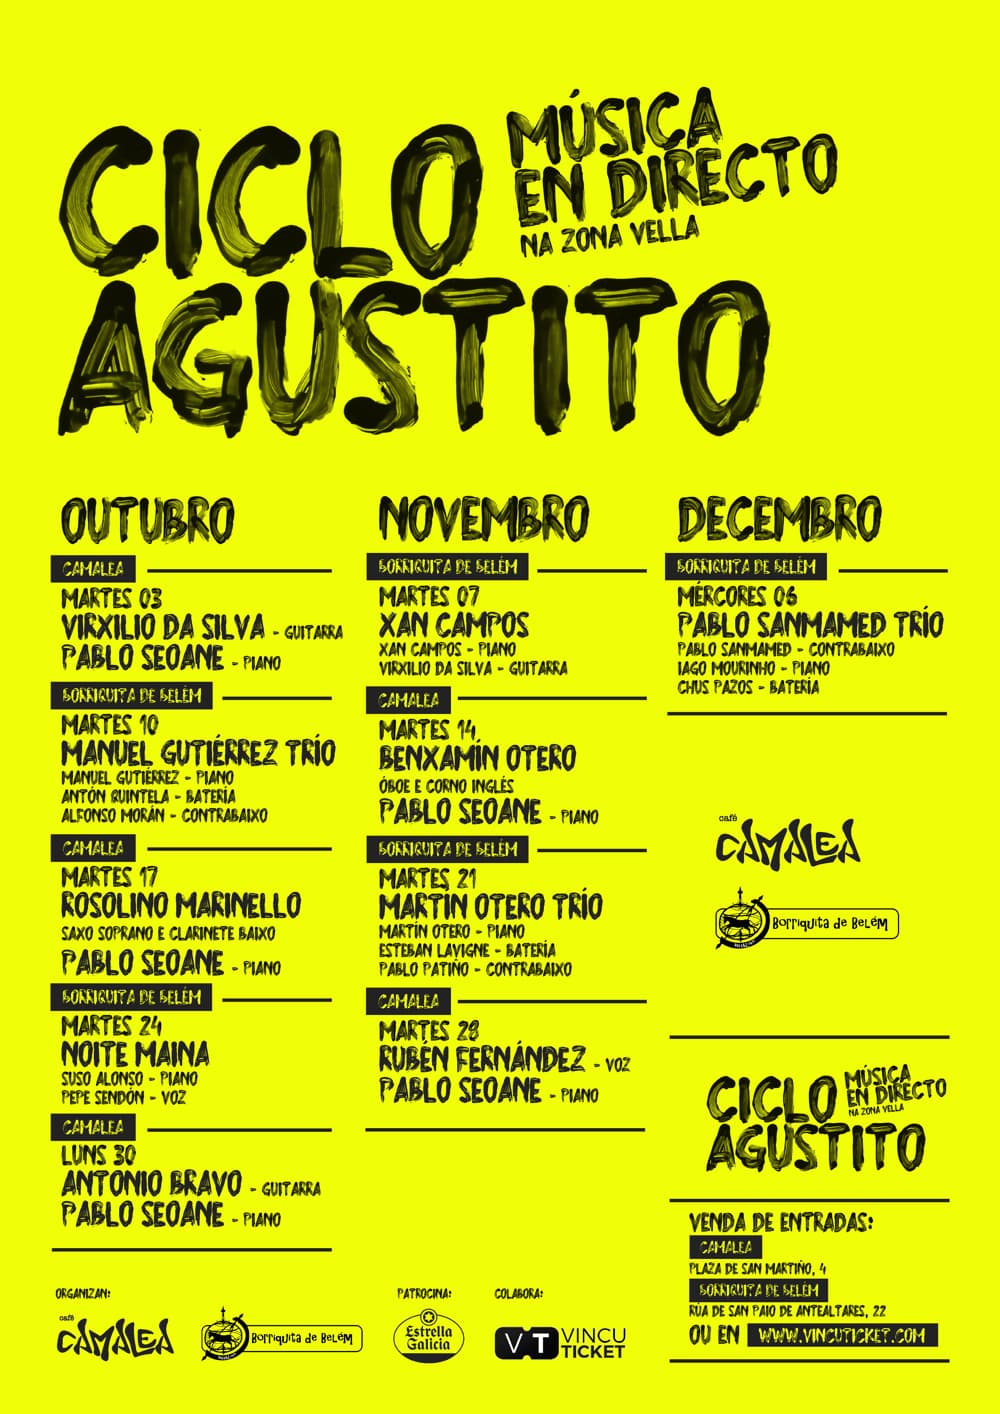 Imagen de El Ciclo Agustito regresa a Santiago de Compostela con una edición renovada